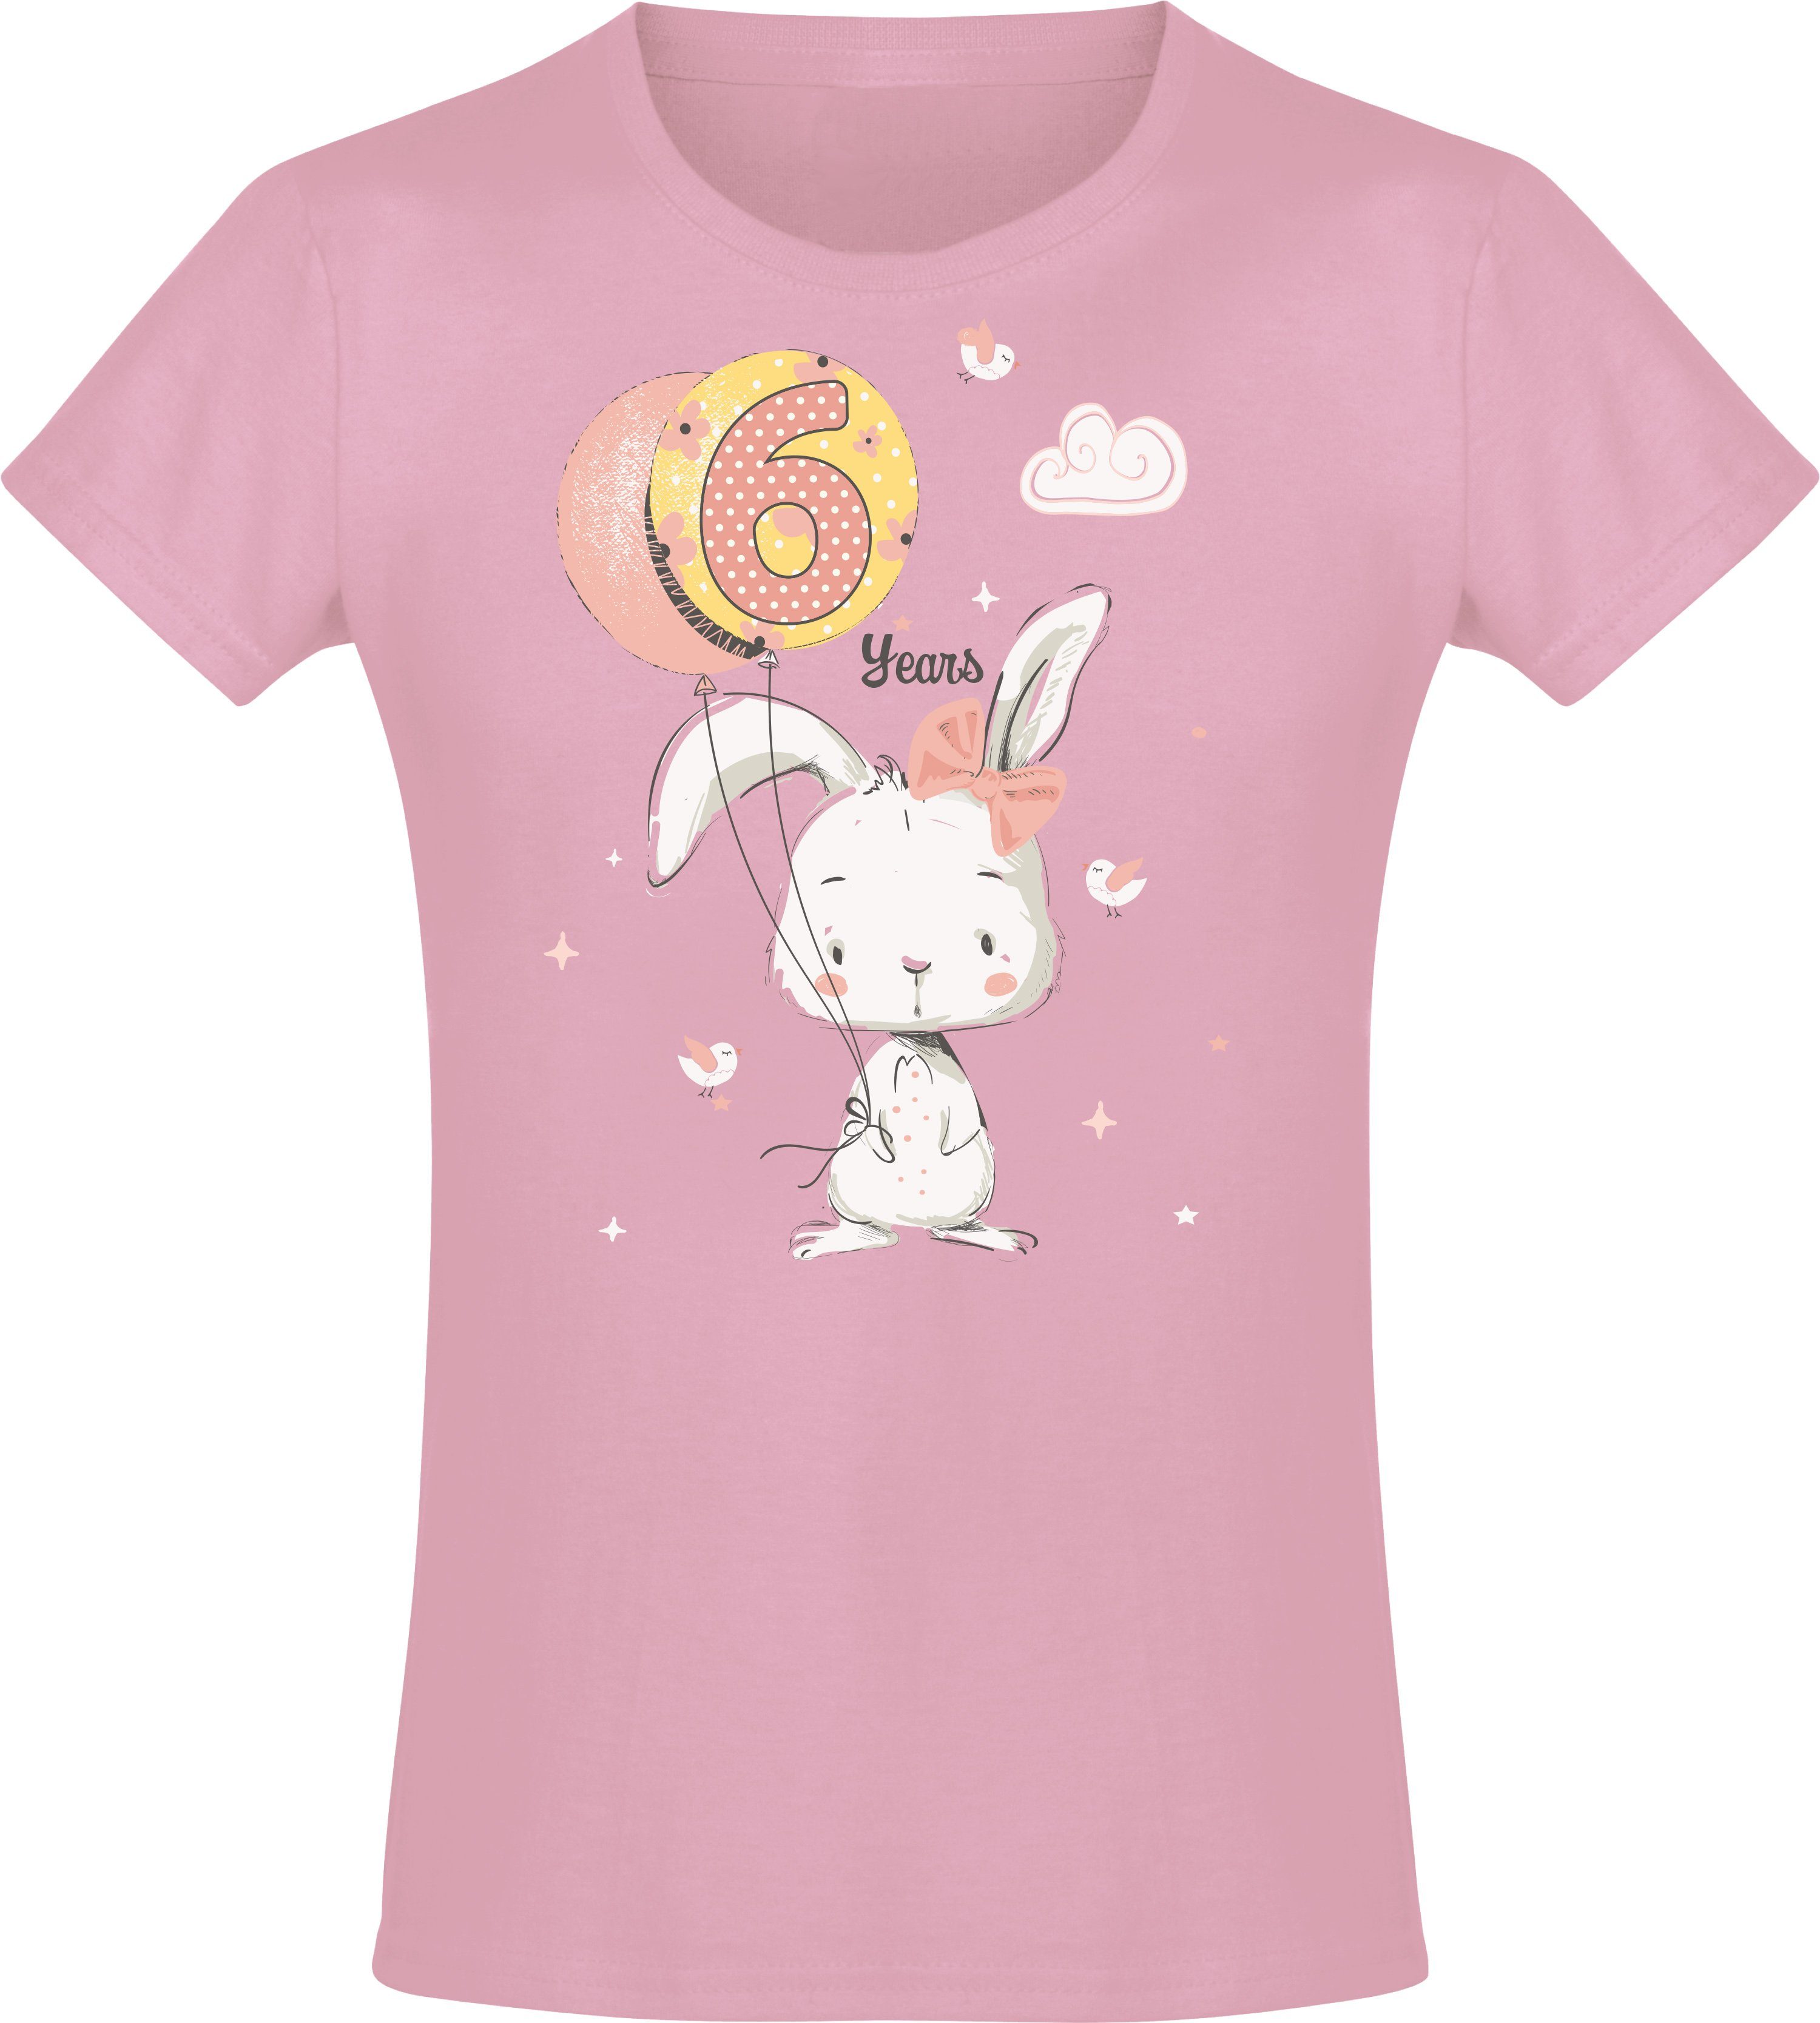 Baddery Print-Shirt Geburstagsgeschenk für Mädchen : 6 Jahre mit Hase hochwertiger Siebdruck, aus Baumwolle Light Pink